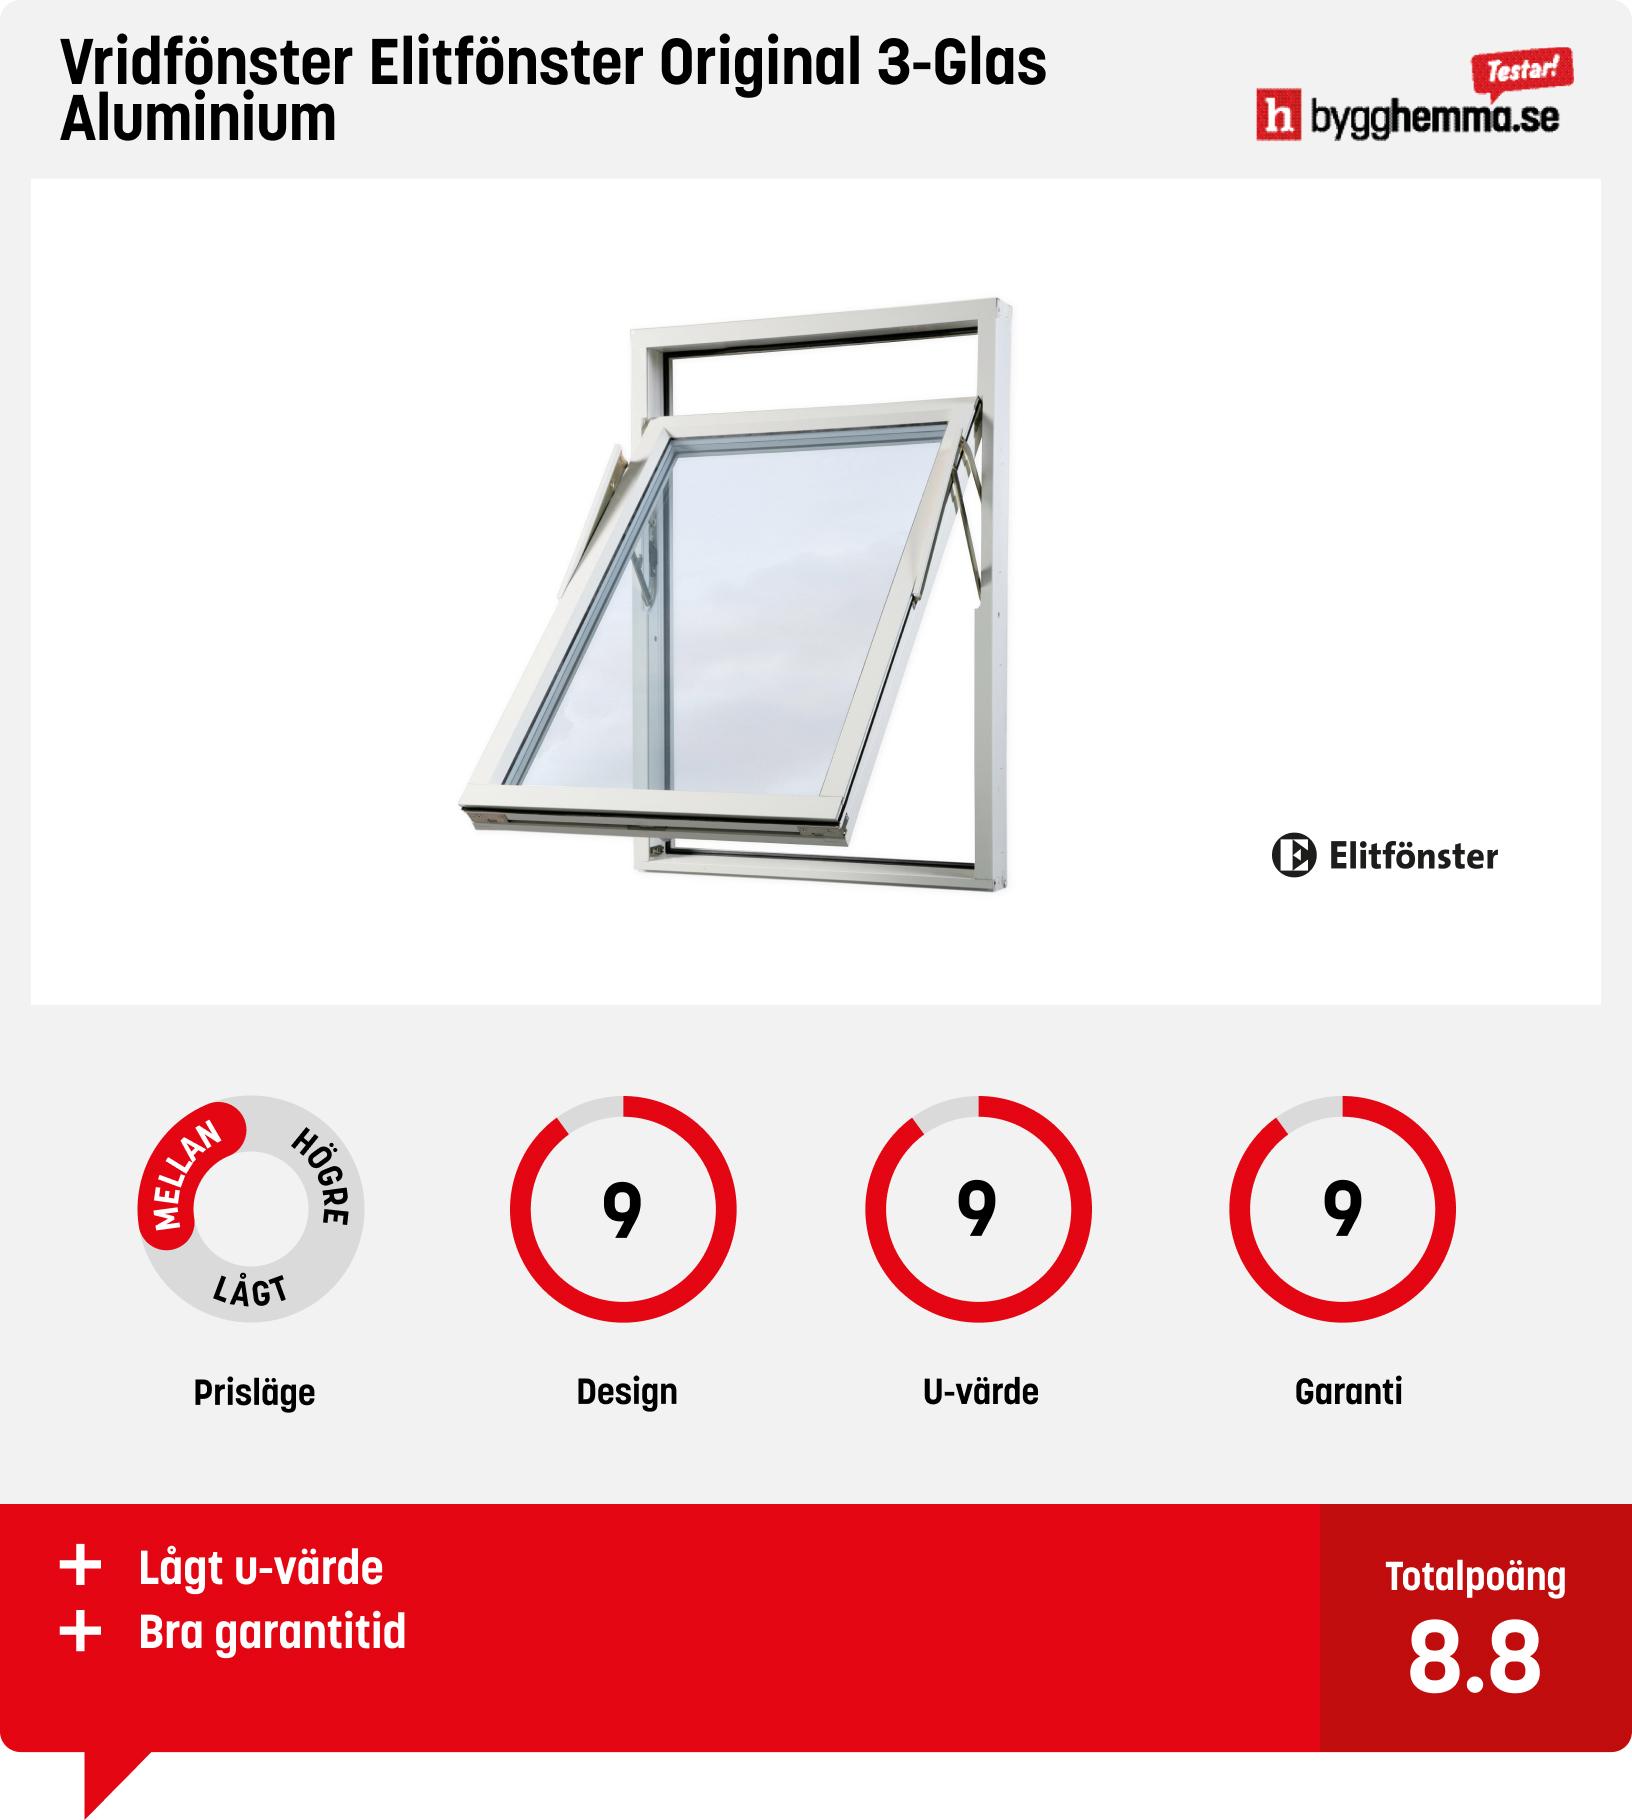 Aluminiumfönster - Vridfönster Elitfönster Original 3-Glas Aluminium